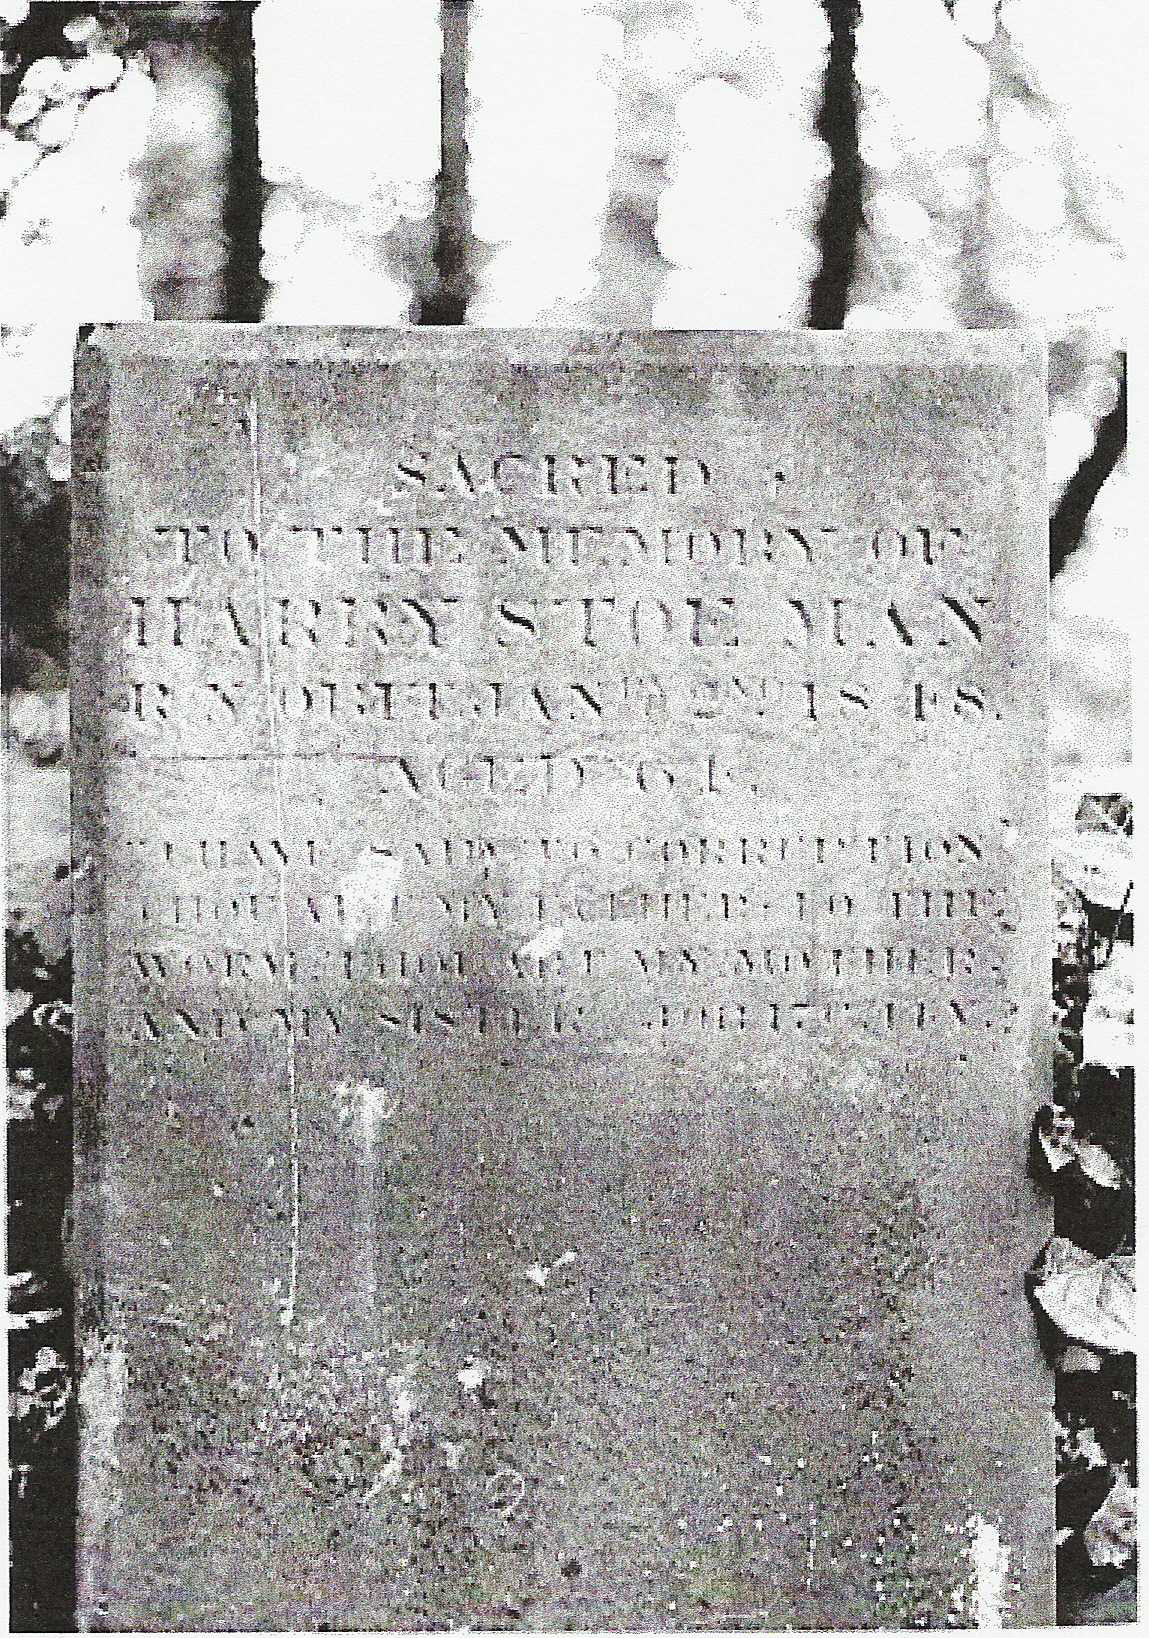 harry stoe man grave stone